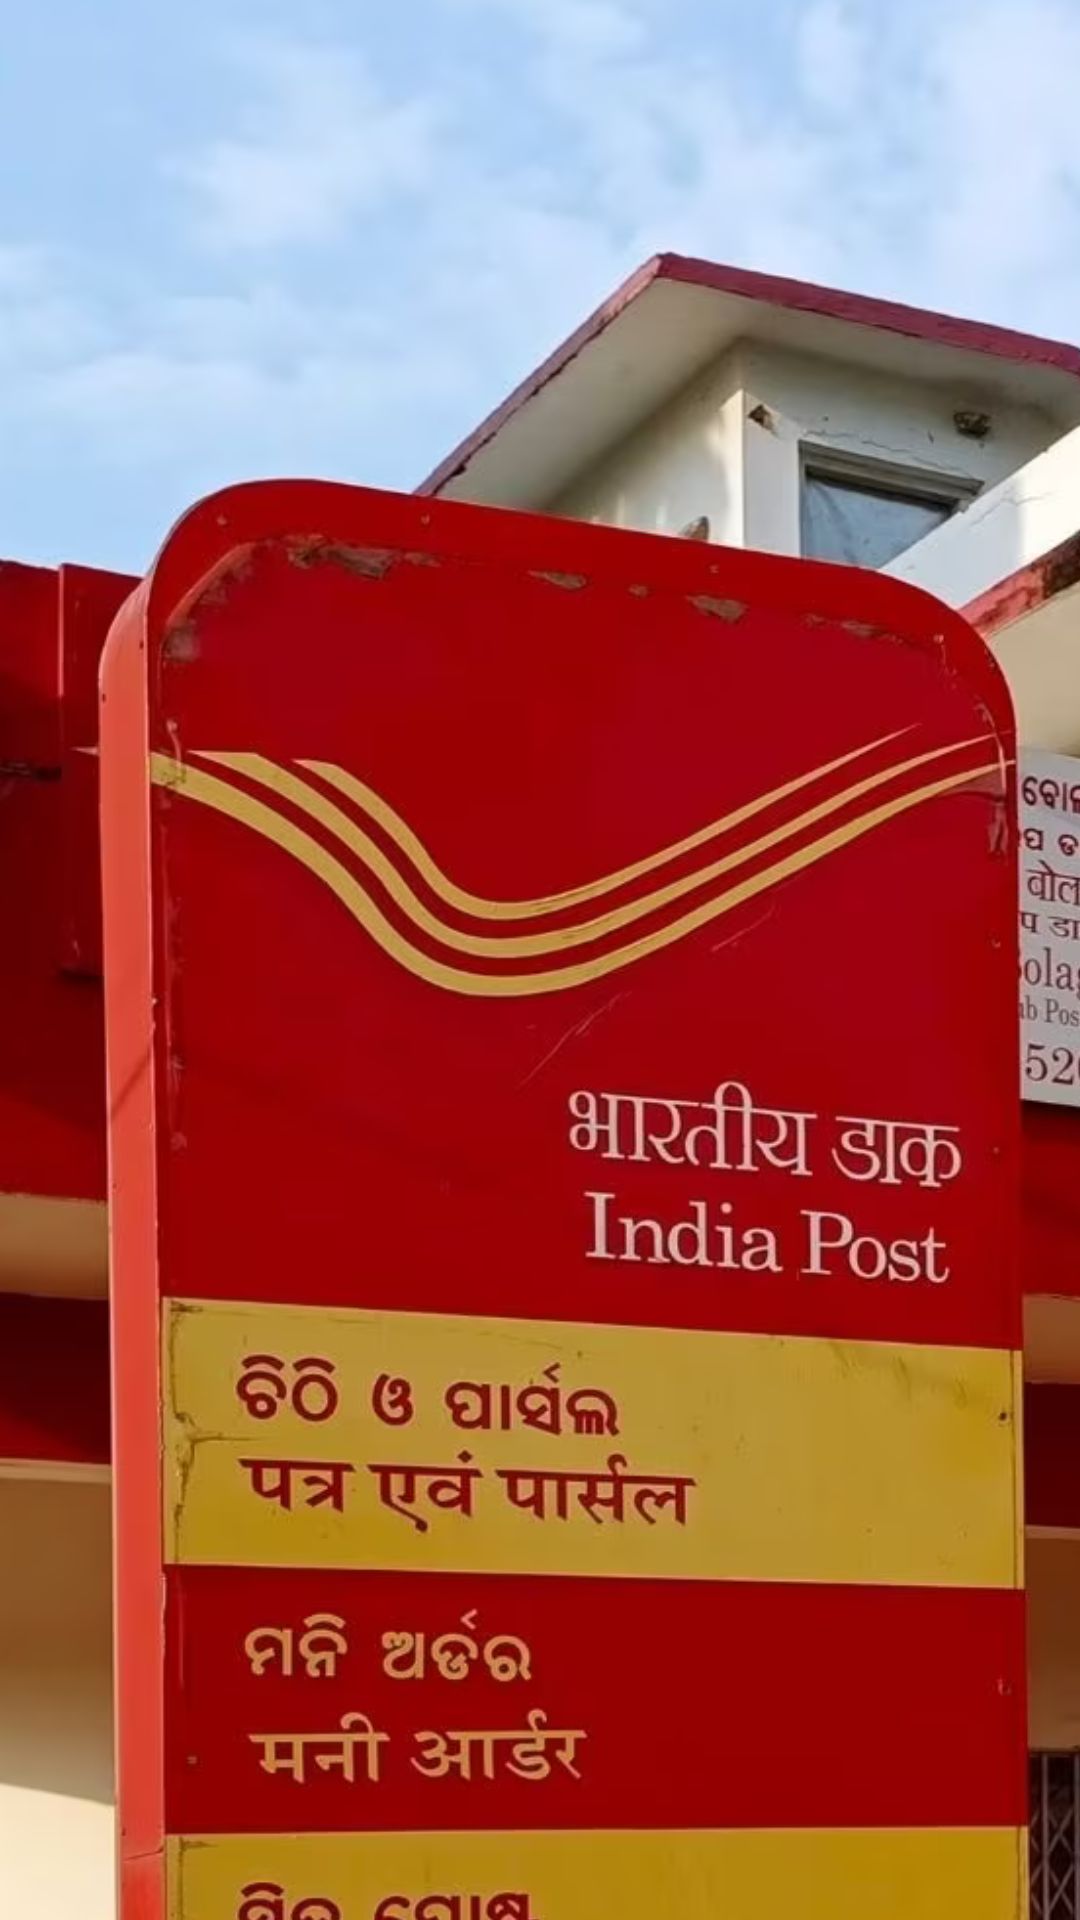 Post office RD में 10000 रुपये प्रति महीना 3 साल तक जमा करने पर कितना मिलेगा ब्याज?